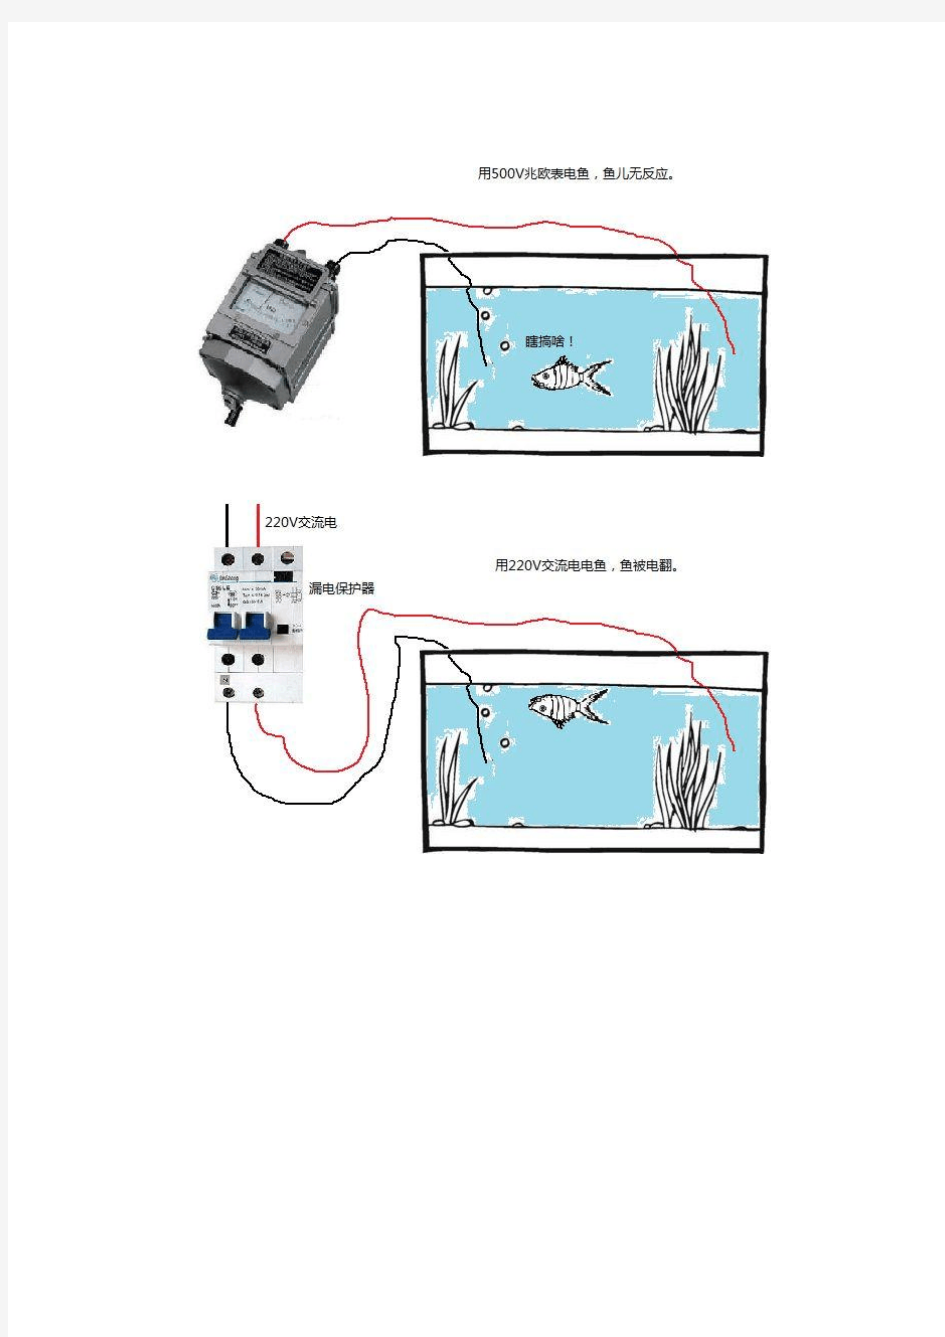 简单电子捕鱼器—电鱼实验—趣味电子实验